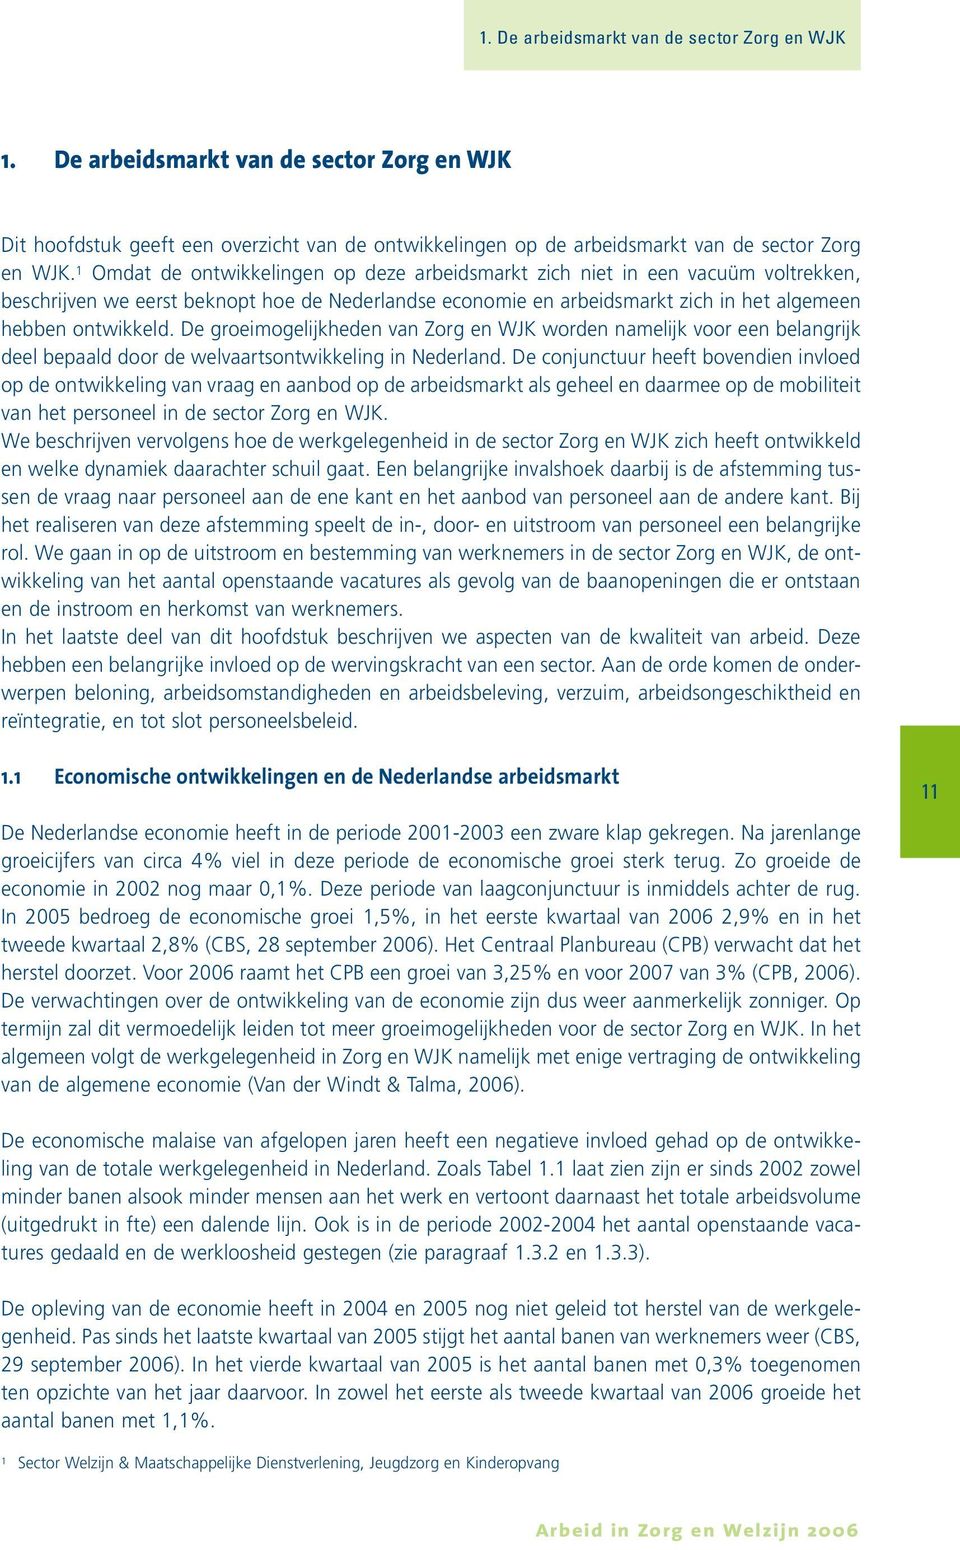 De groeimogelijkheden van Zorg en WJK worden namelijk voor een belangrijk deel bepaald door de welvaartsontwikkeling in Nederland.